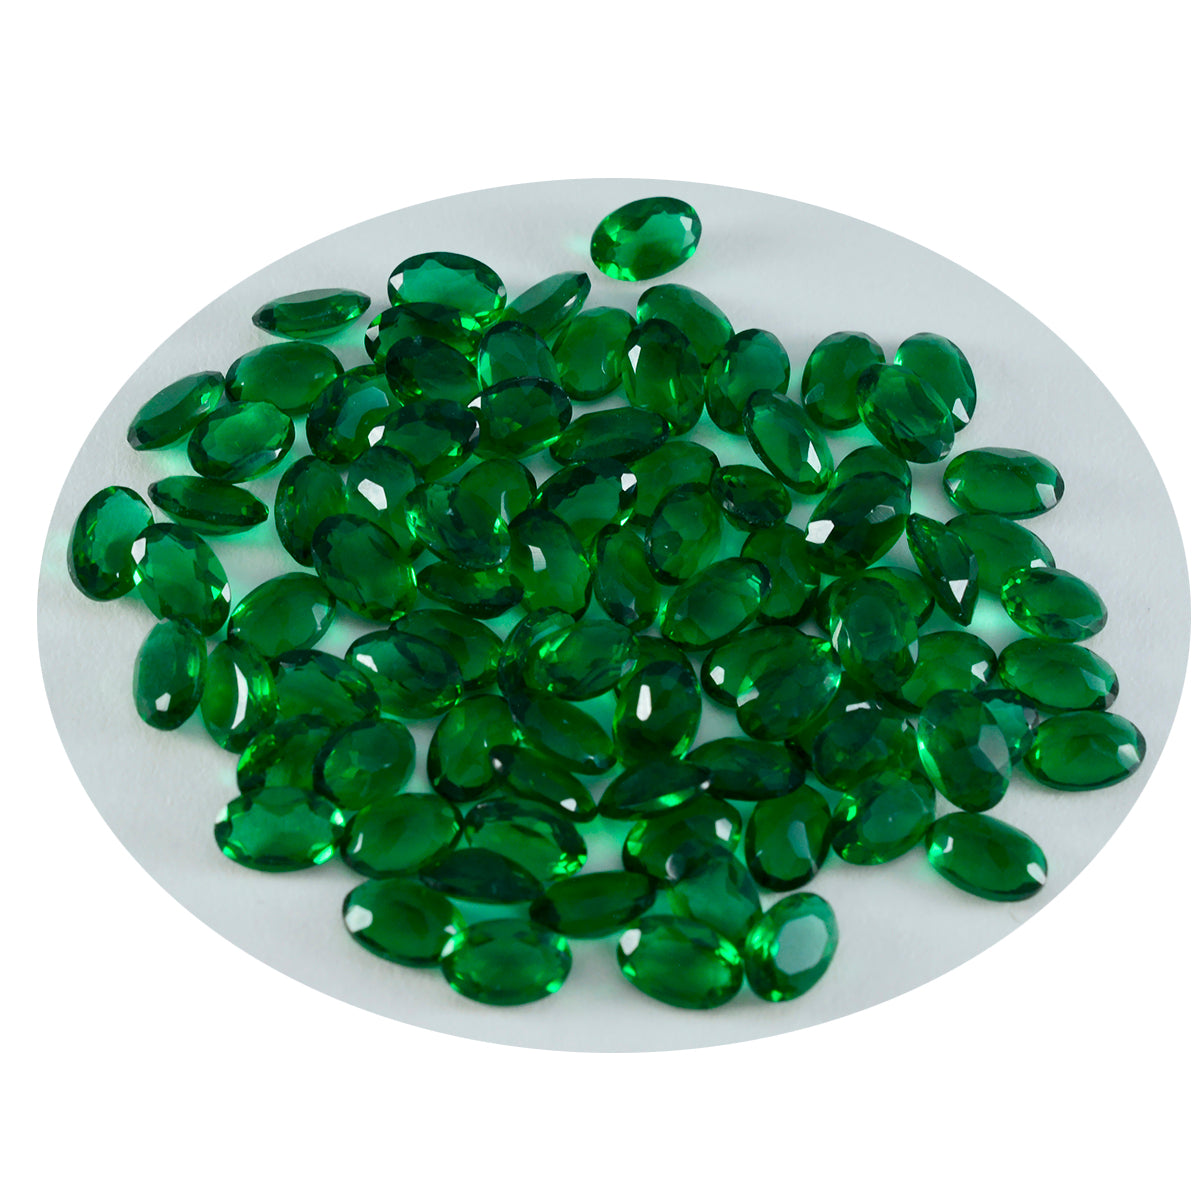 riyogems 1шт зеленый изумруд cz граненый 3х5 мм овальной формы хорошее качество свободный драгоценный камень